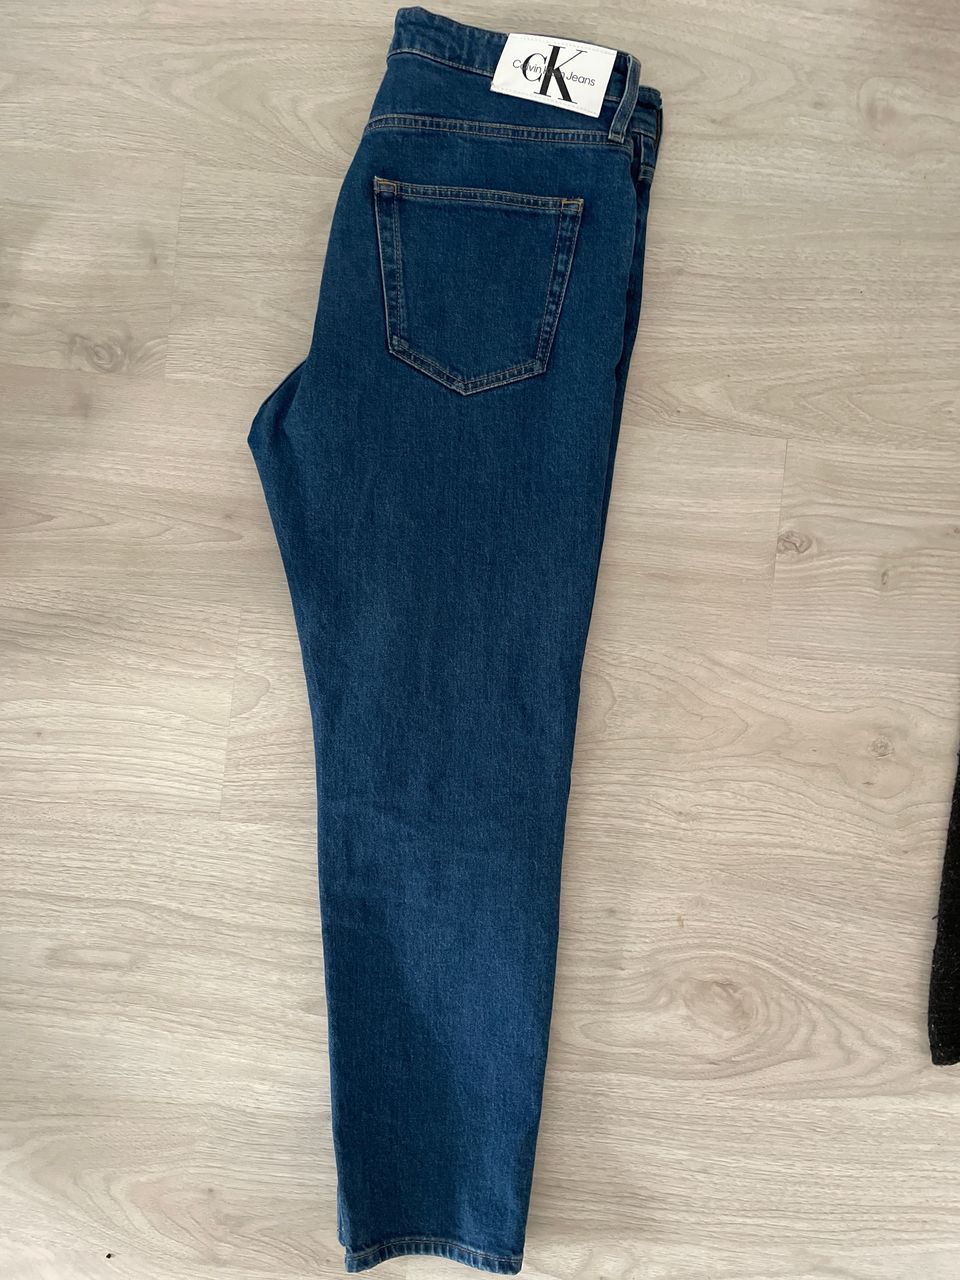 Calvin Klein - dad jeans